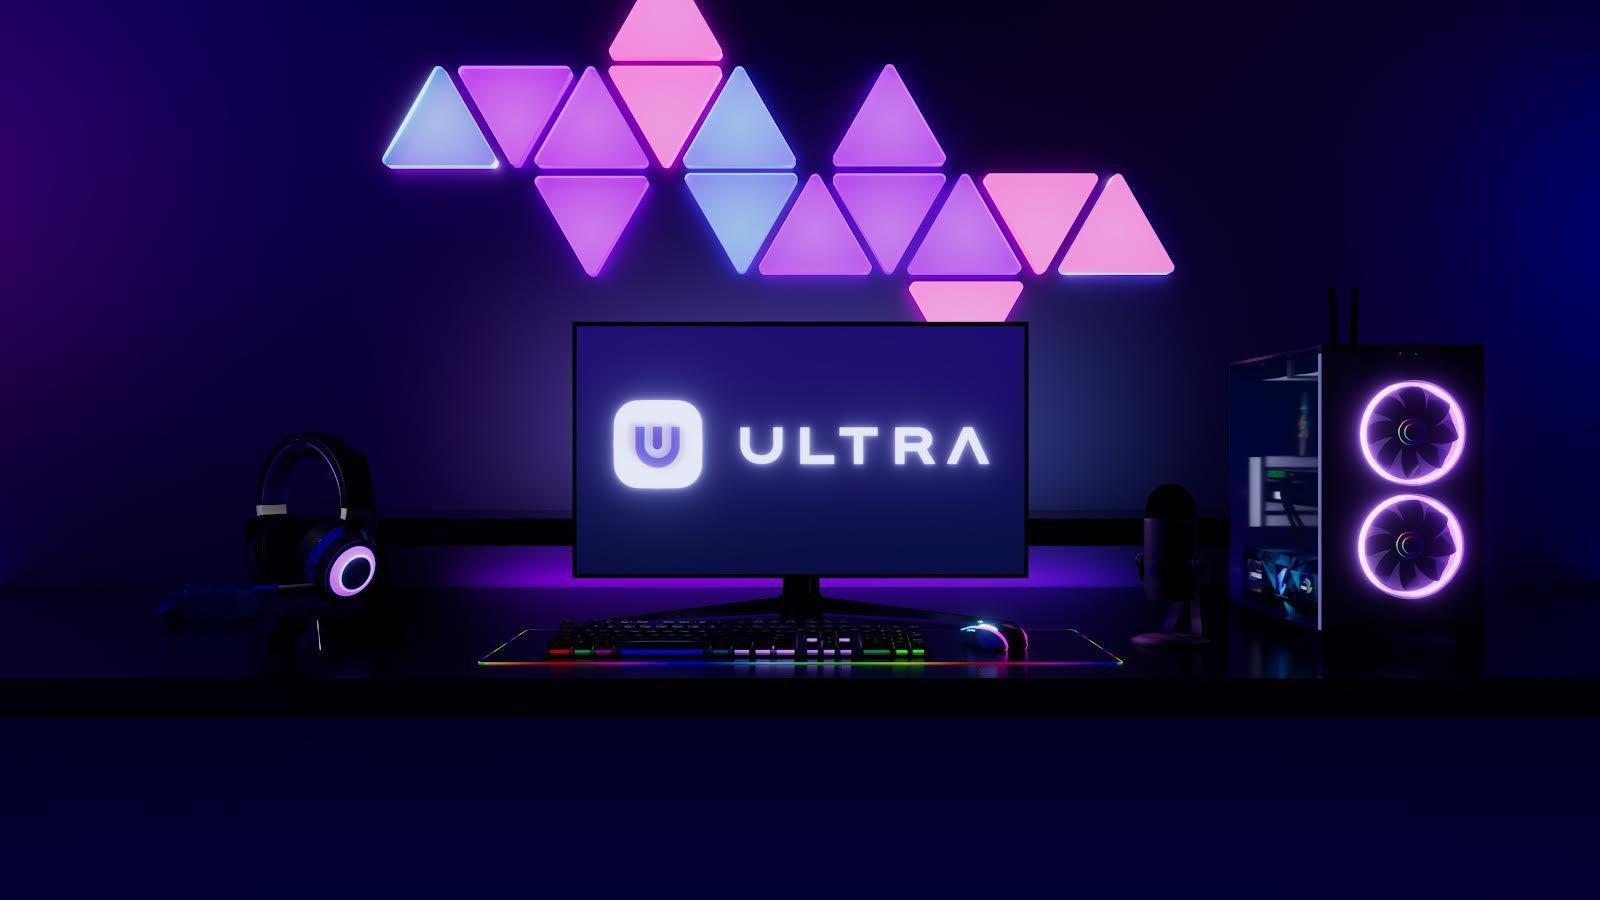 Apresentando Ultra Arena: plataforma de e-sports de última geração - Play  to Earn Games News